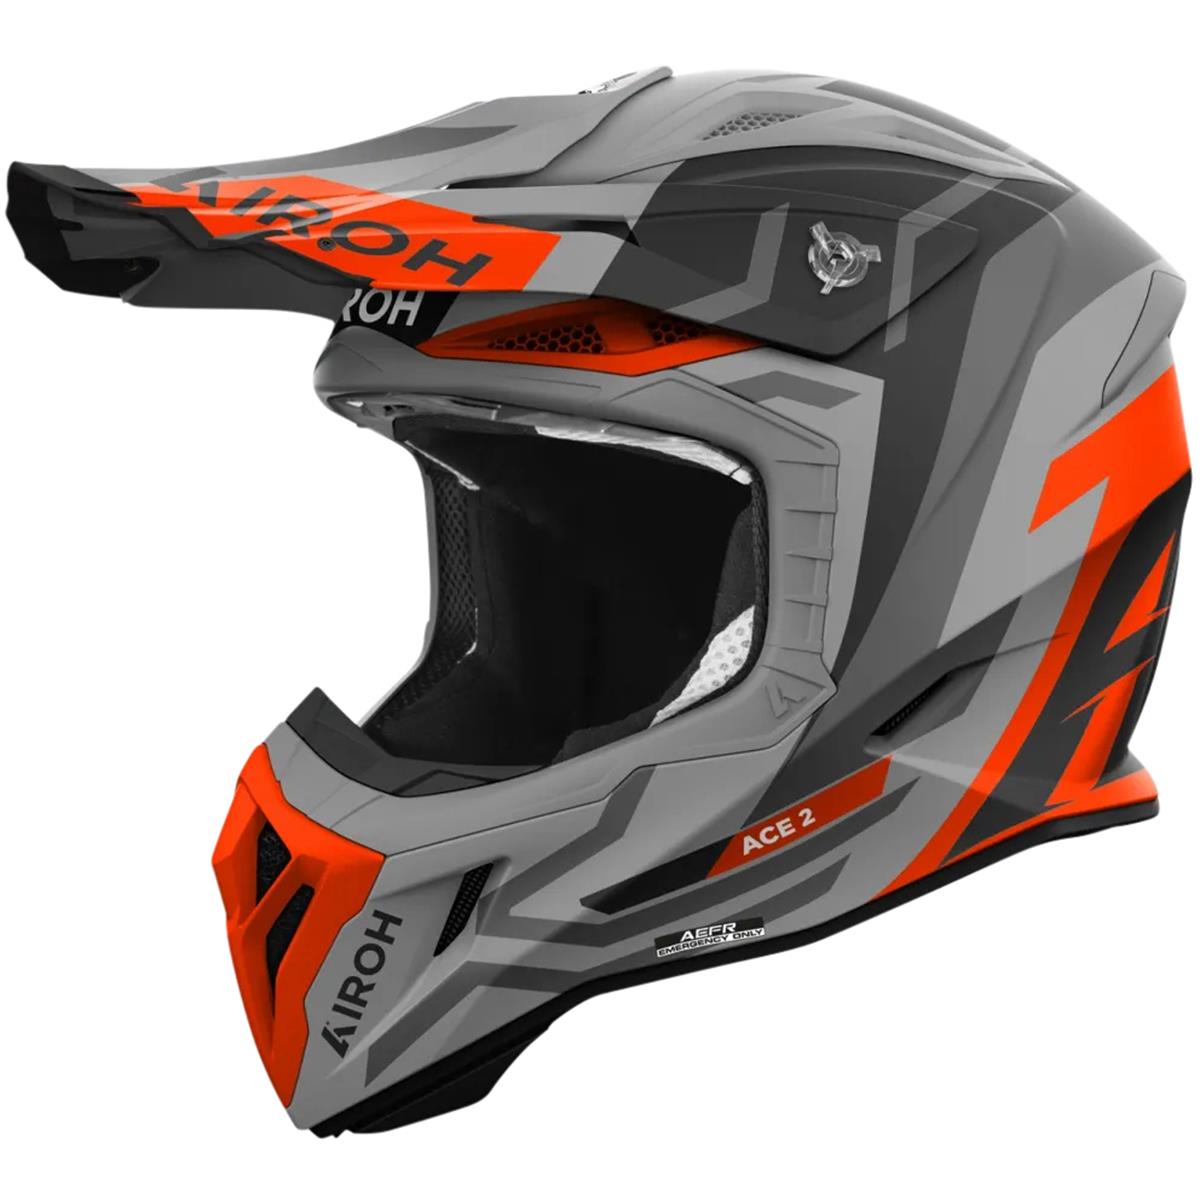 Airoh Motocross-Helm Aviator Ace 2 Ground - Orange Matt